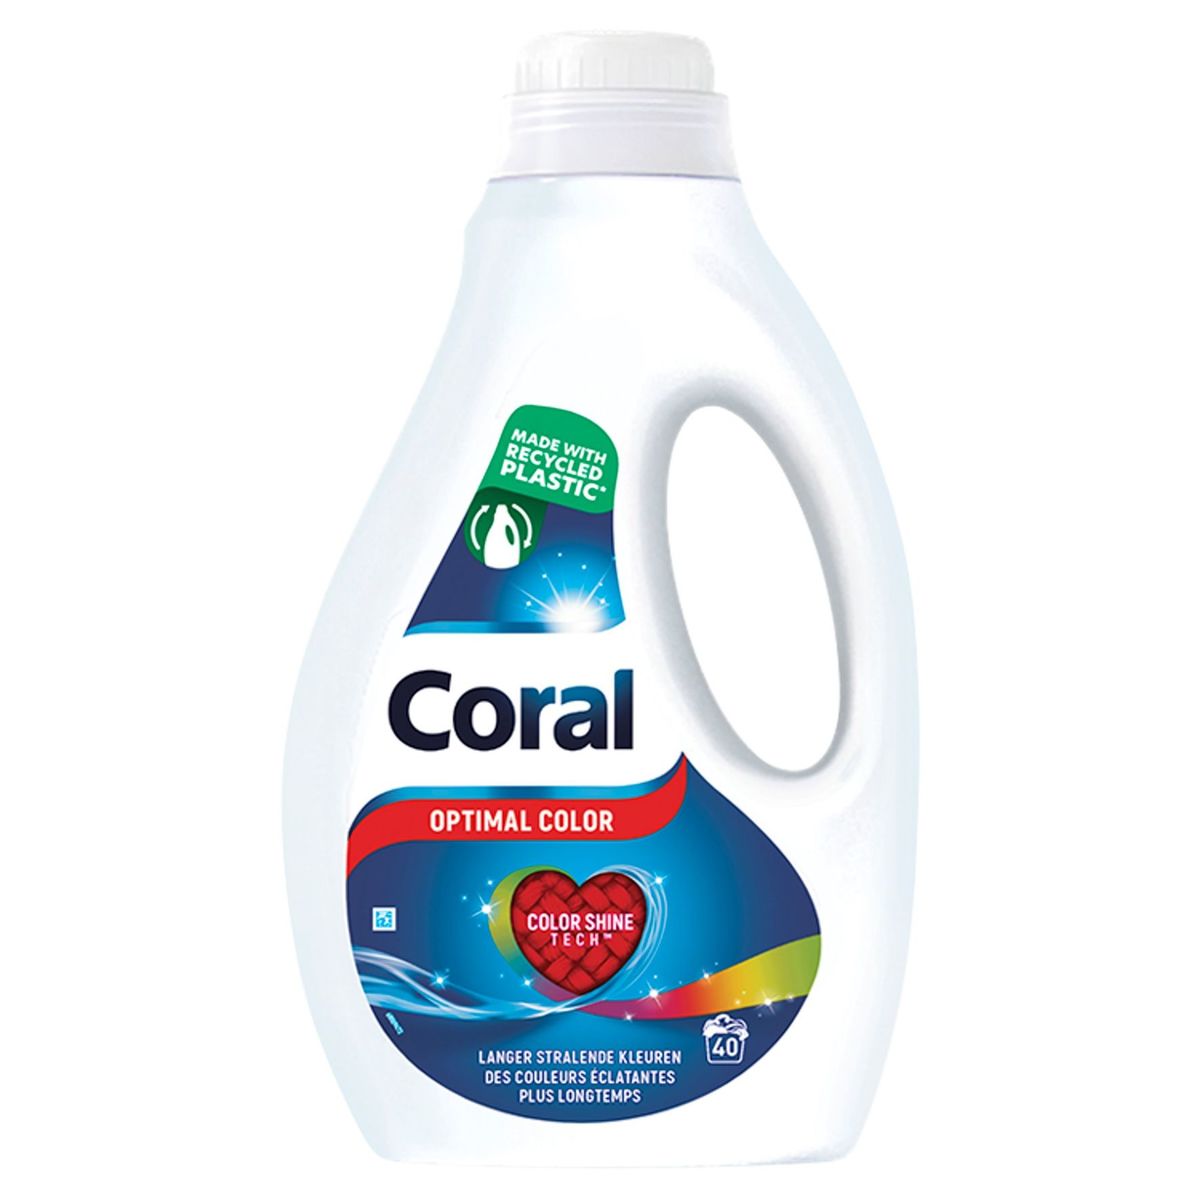 Coral Détergent liquide pour Linge Coloré Optimal Color 40 Lavages